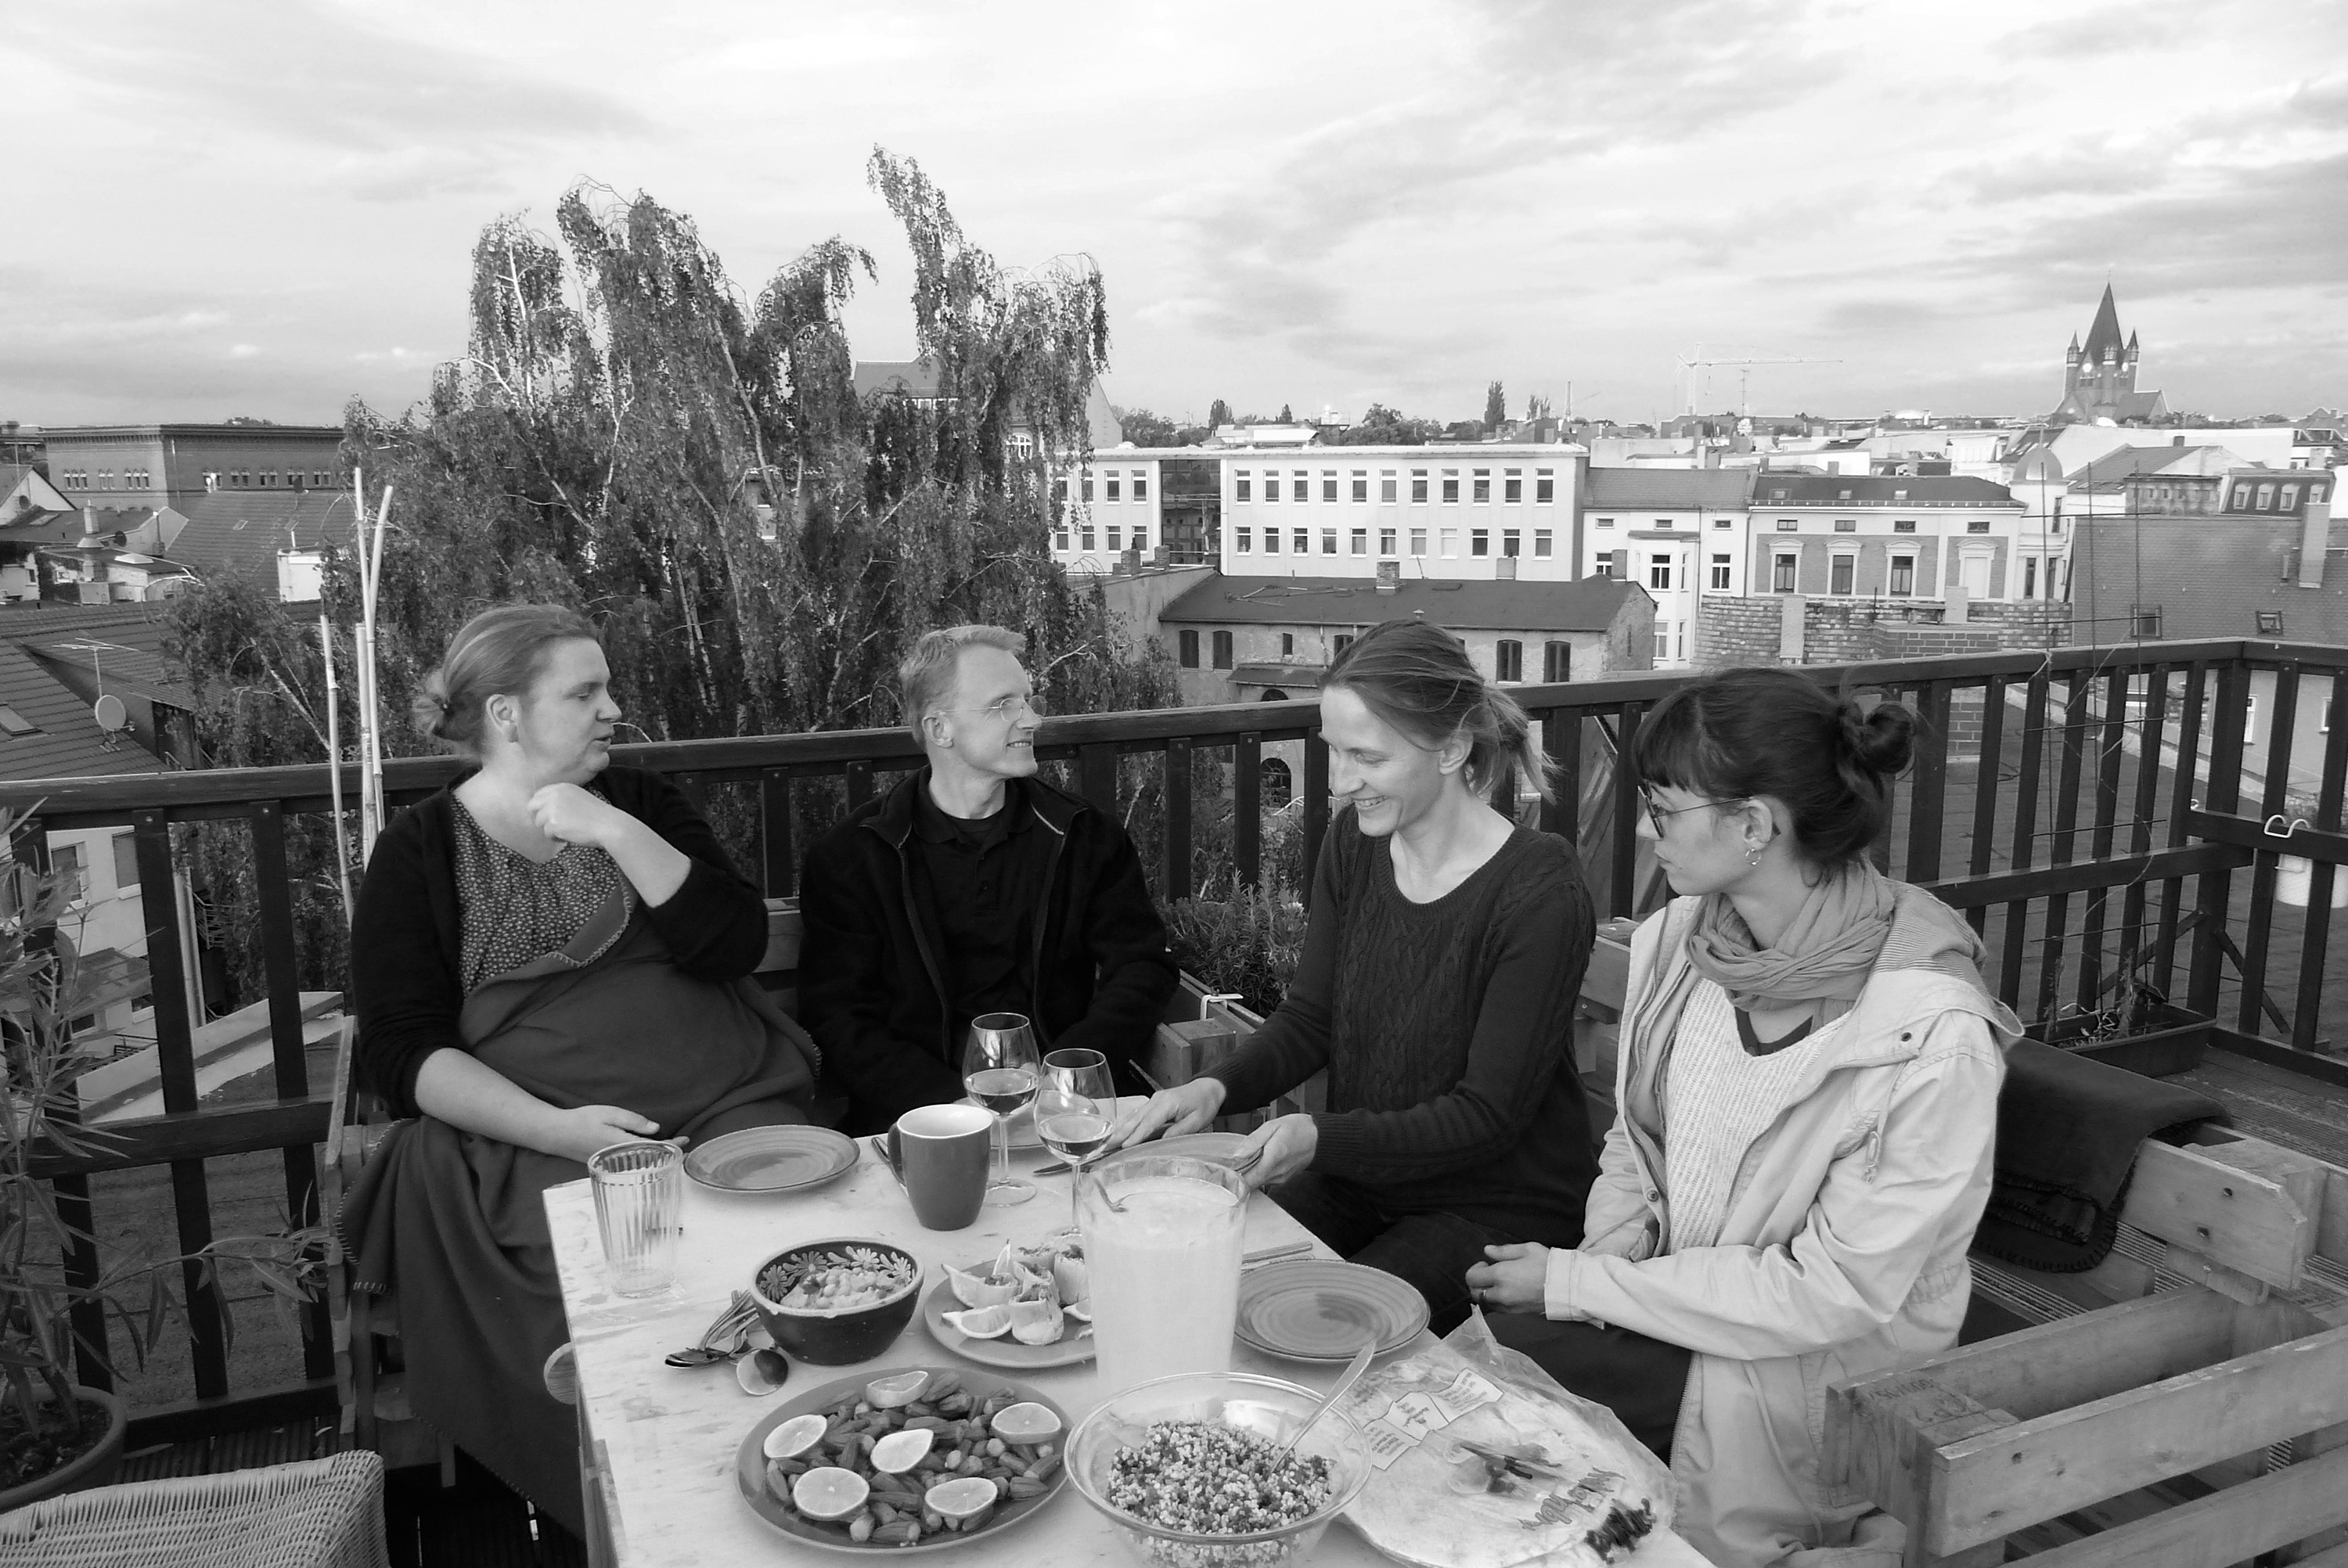 Schwarz-weiß-Aufnahme: Ein Mann und drei Frauen sitzen auf einer Terasse an einem gedeckten Tisch, im Hintergrund ist ein Stadtpanorama zu sehen.